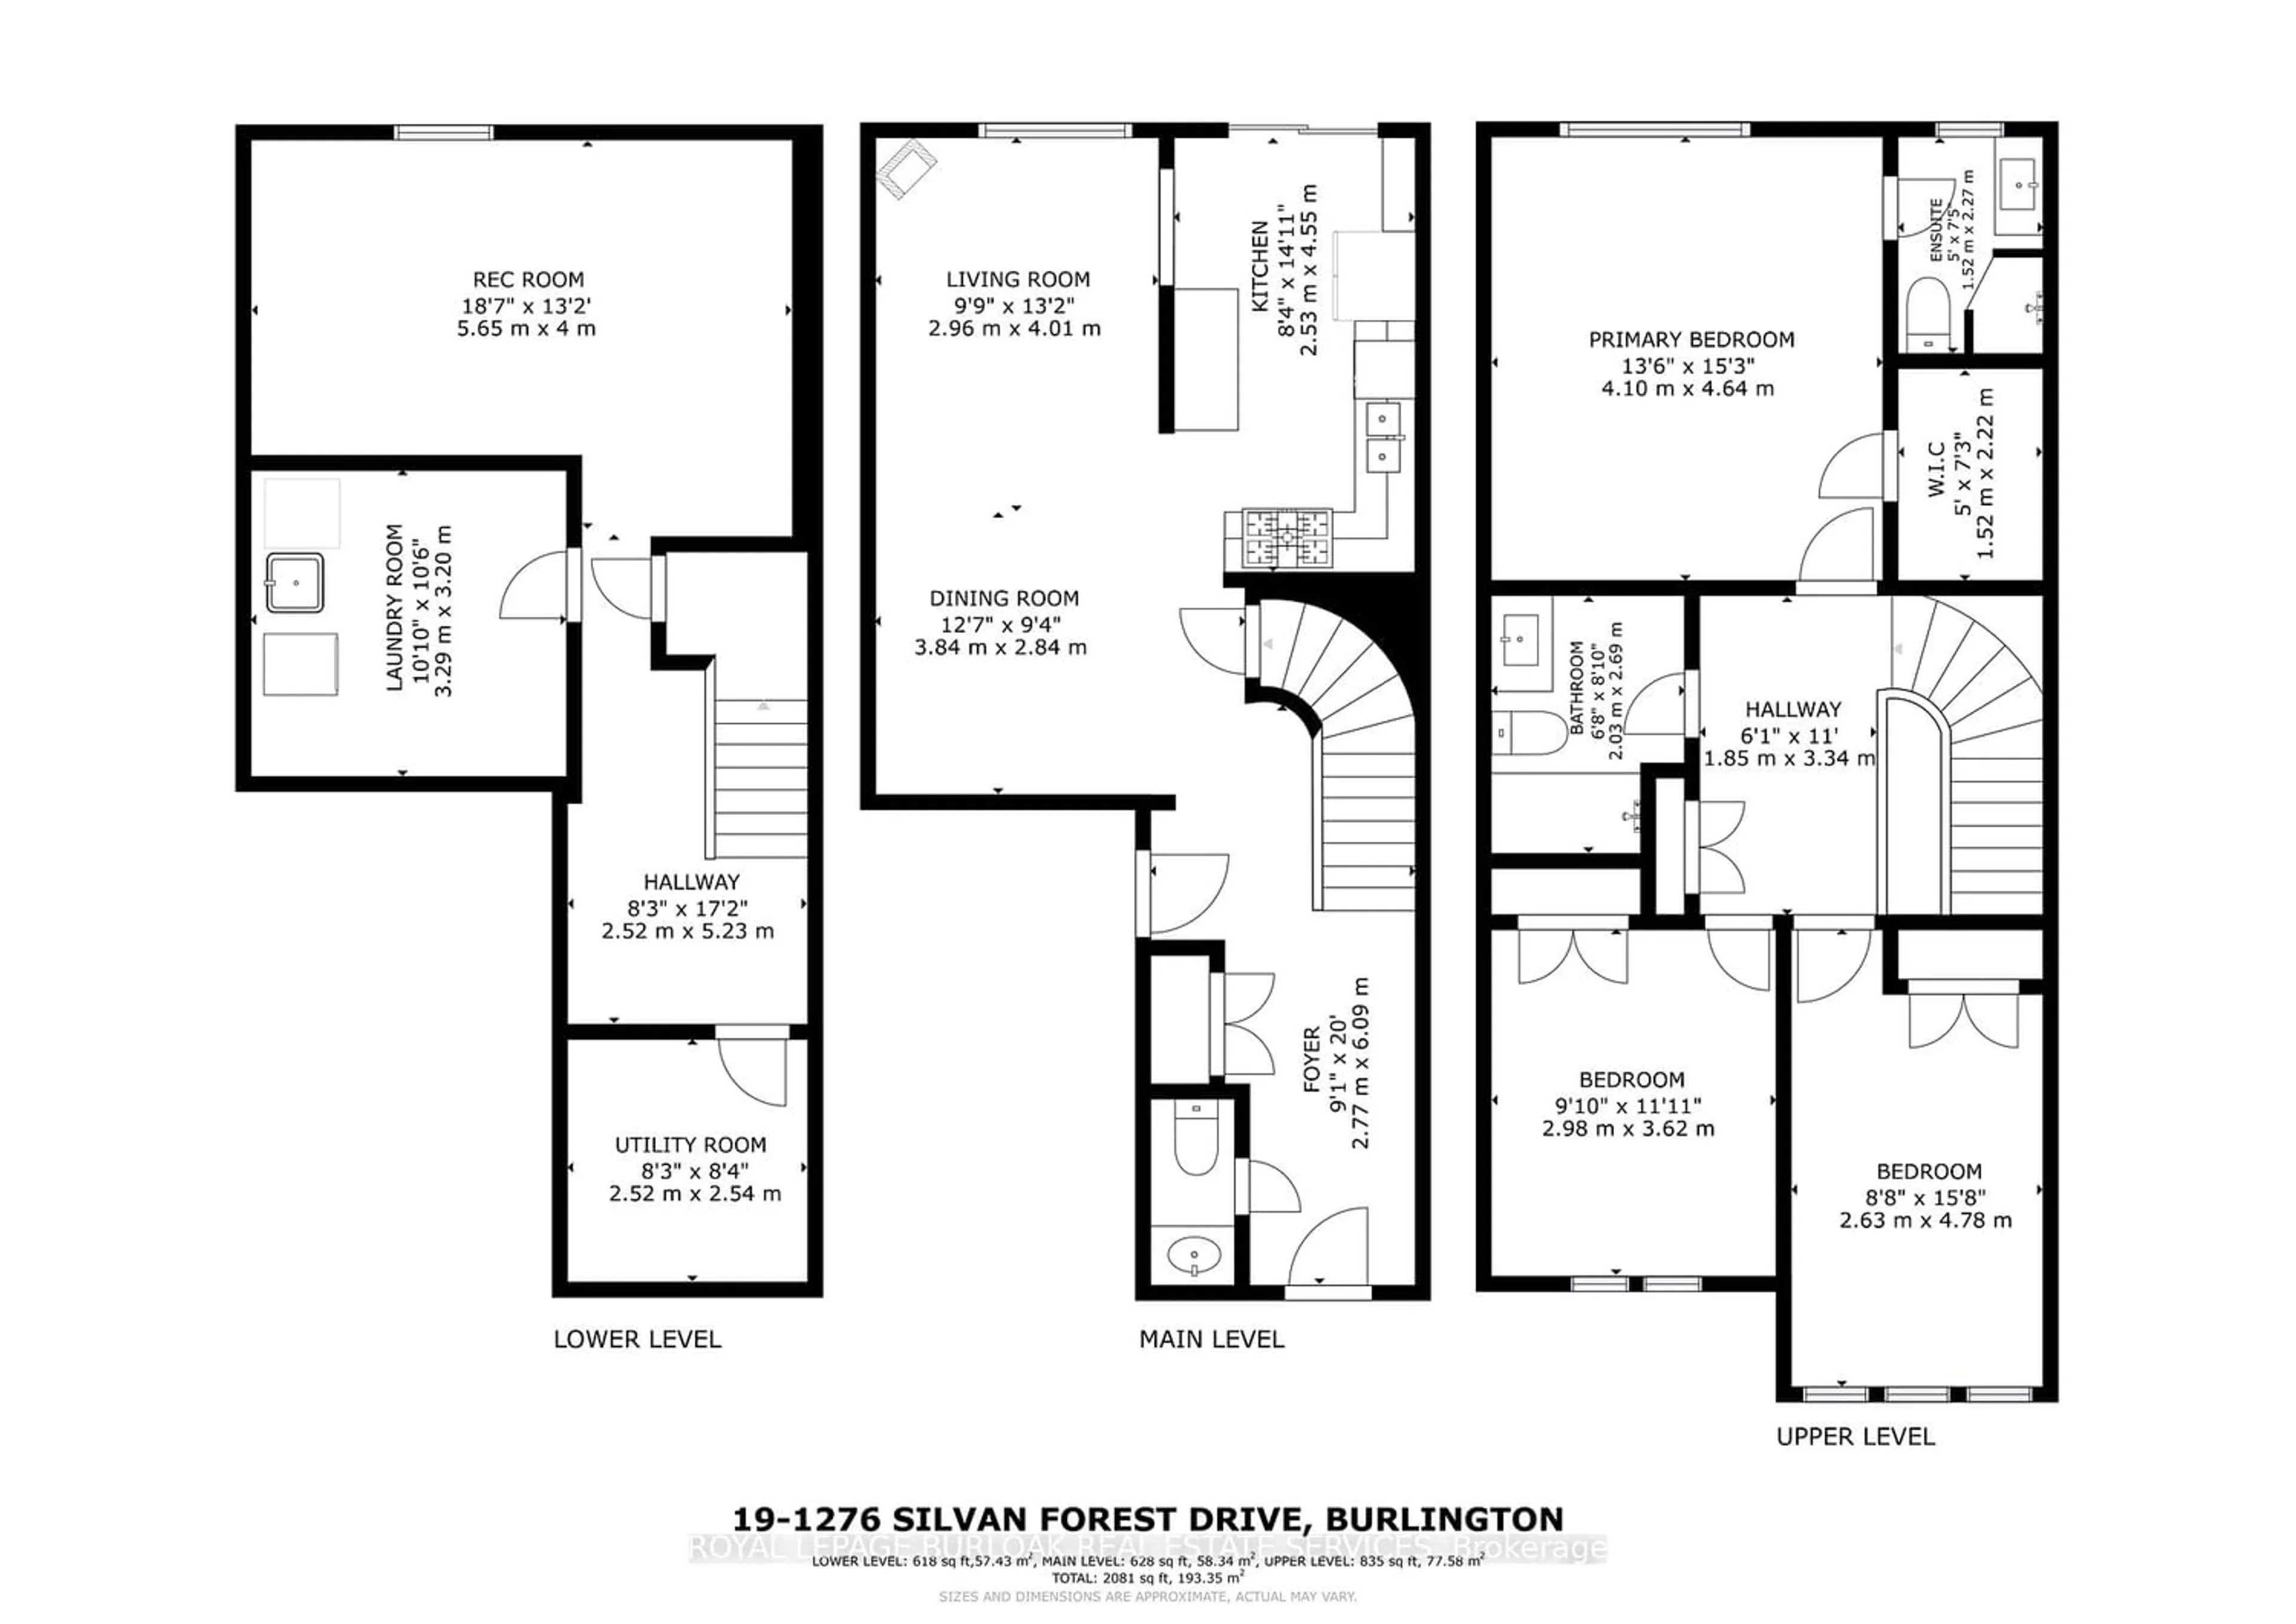 Floor plan for 1276 Silvan Forest Dr #19, Burlington Ontario L7M 4V8